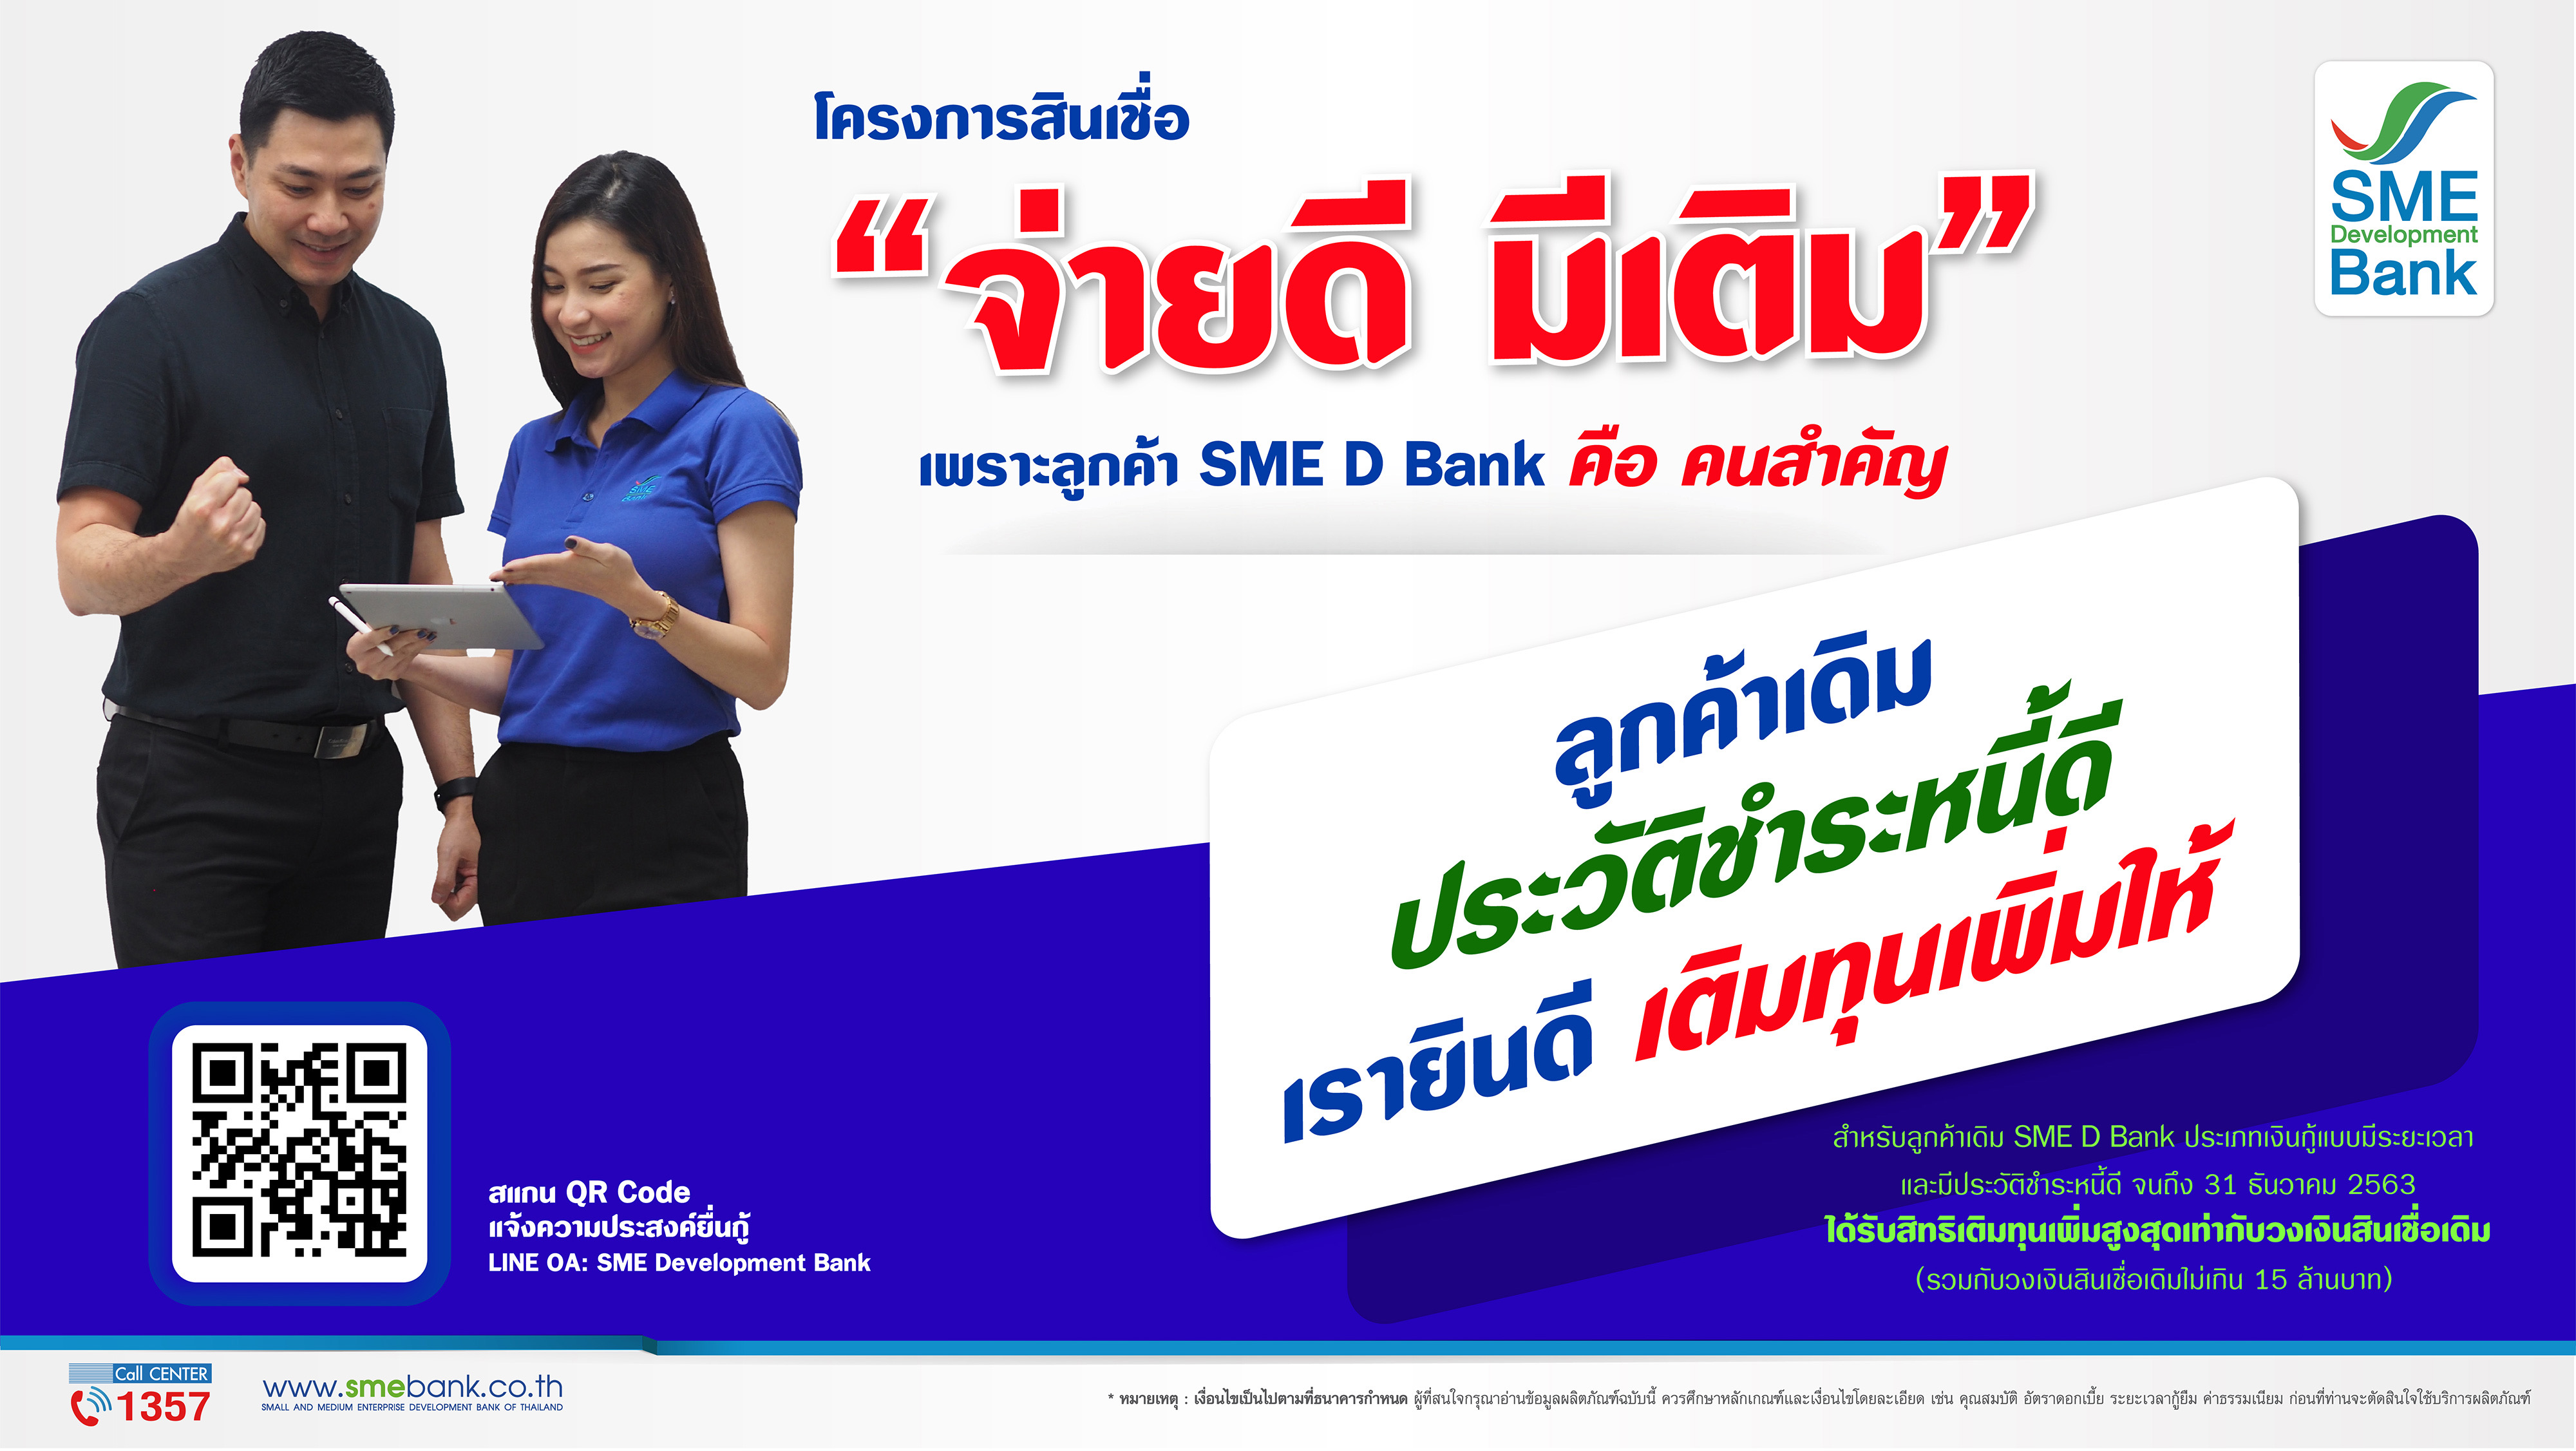 SME D Bank ออกสินเชื่อใหม่ “จ่ายดี มีเติม” หนุนสภาพคล่องก้าวข้ามโควิด-19